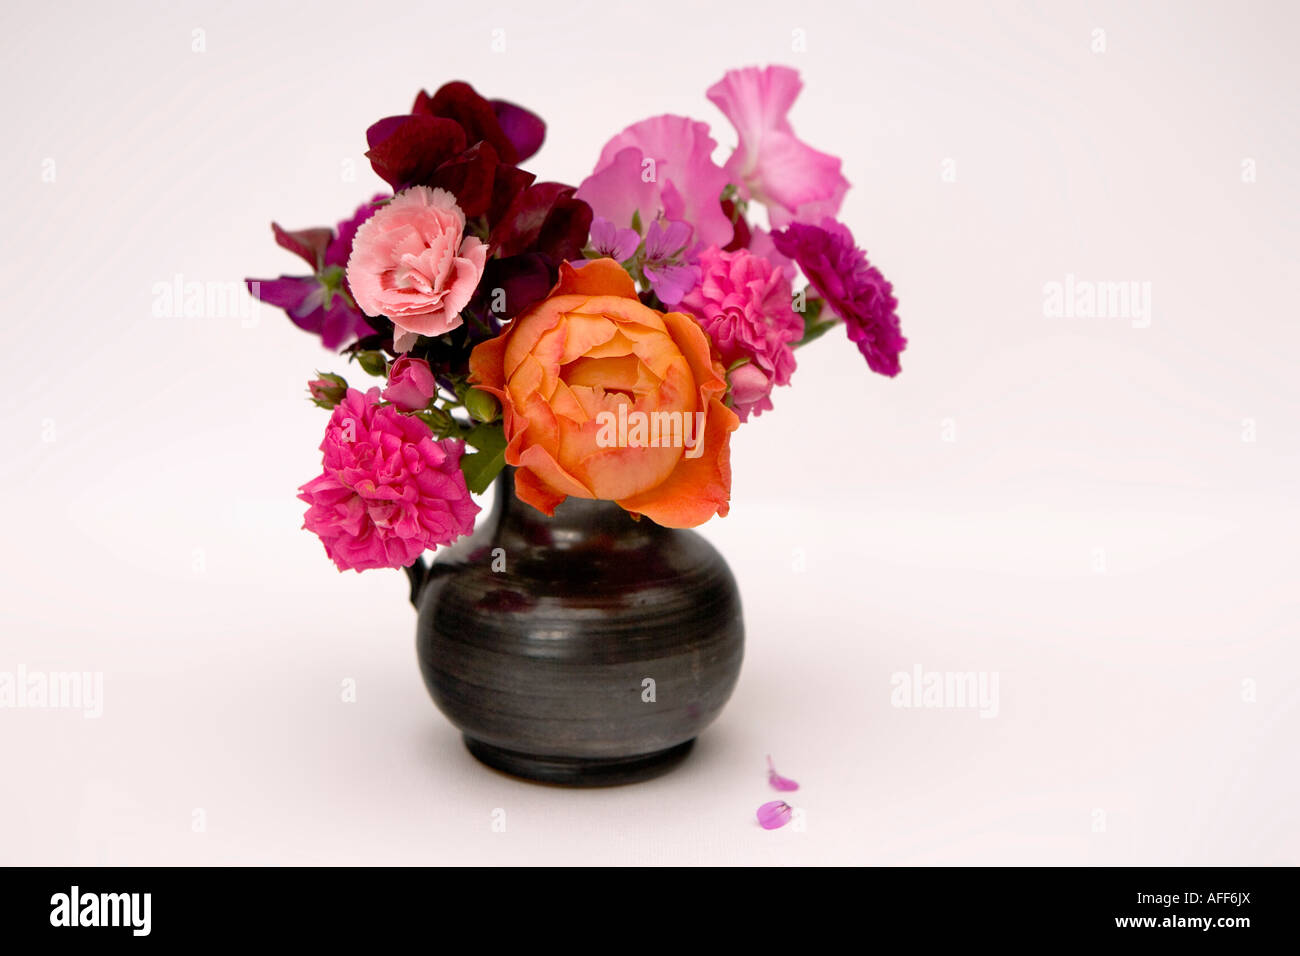 Vase of flowers Stock Photo